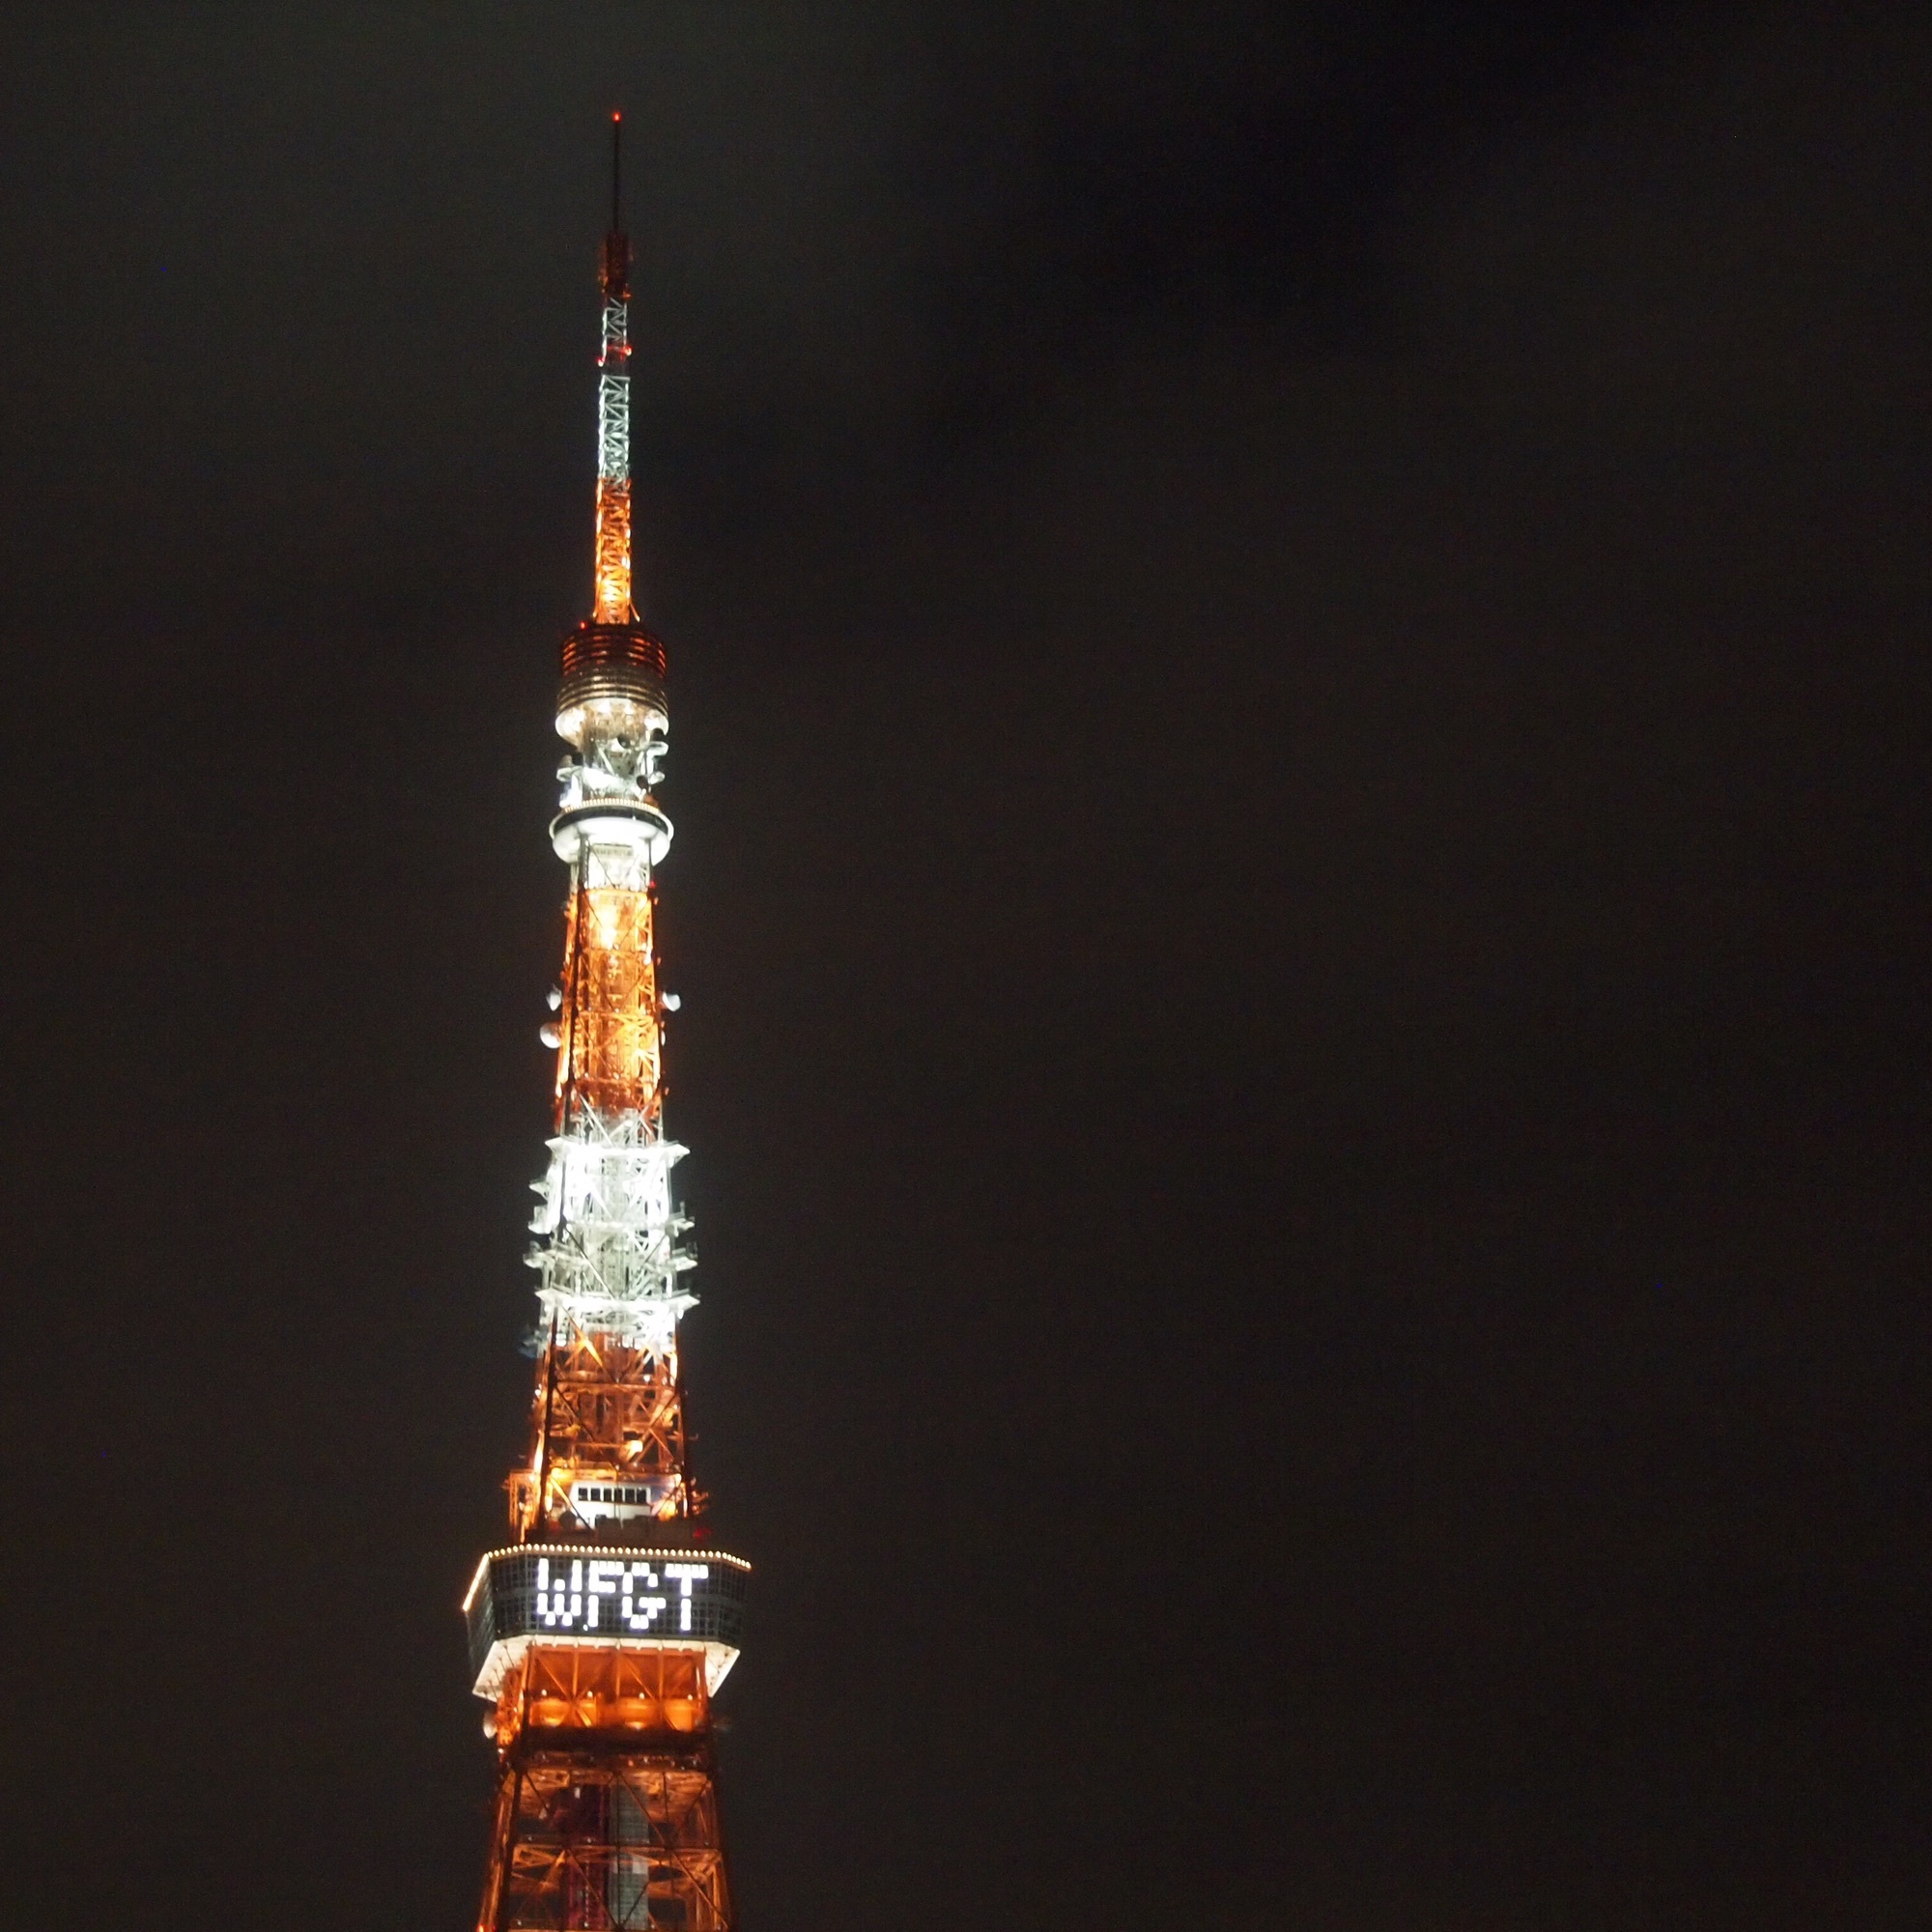 2016年9月25日「東京タワー「WFGT」窓文字照明」 | TOWERUP